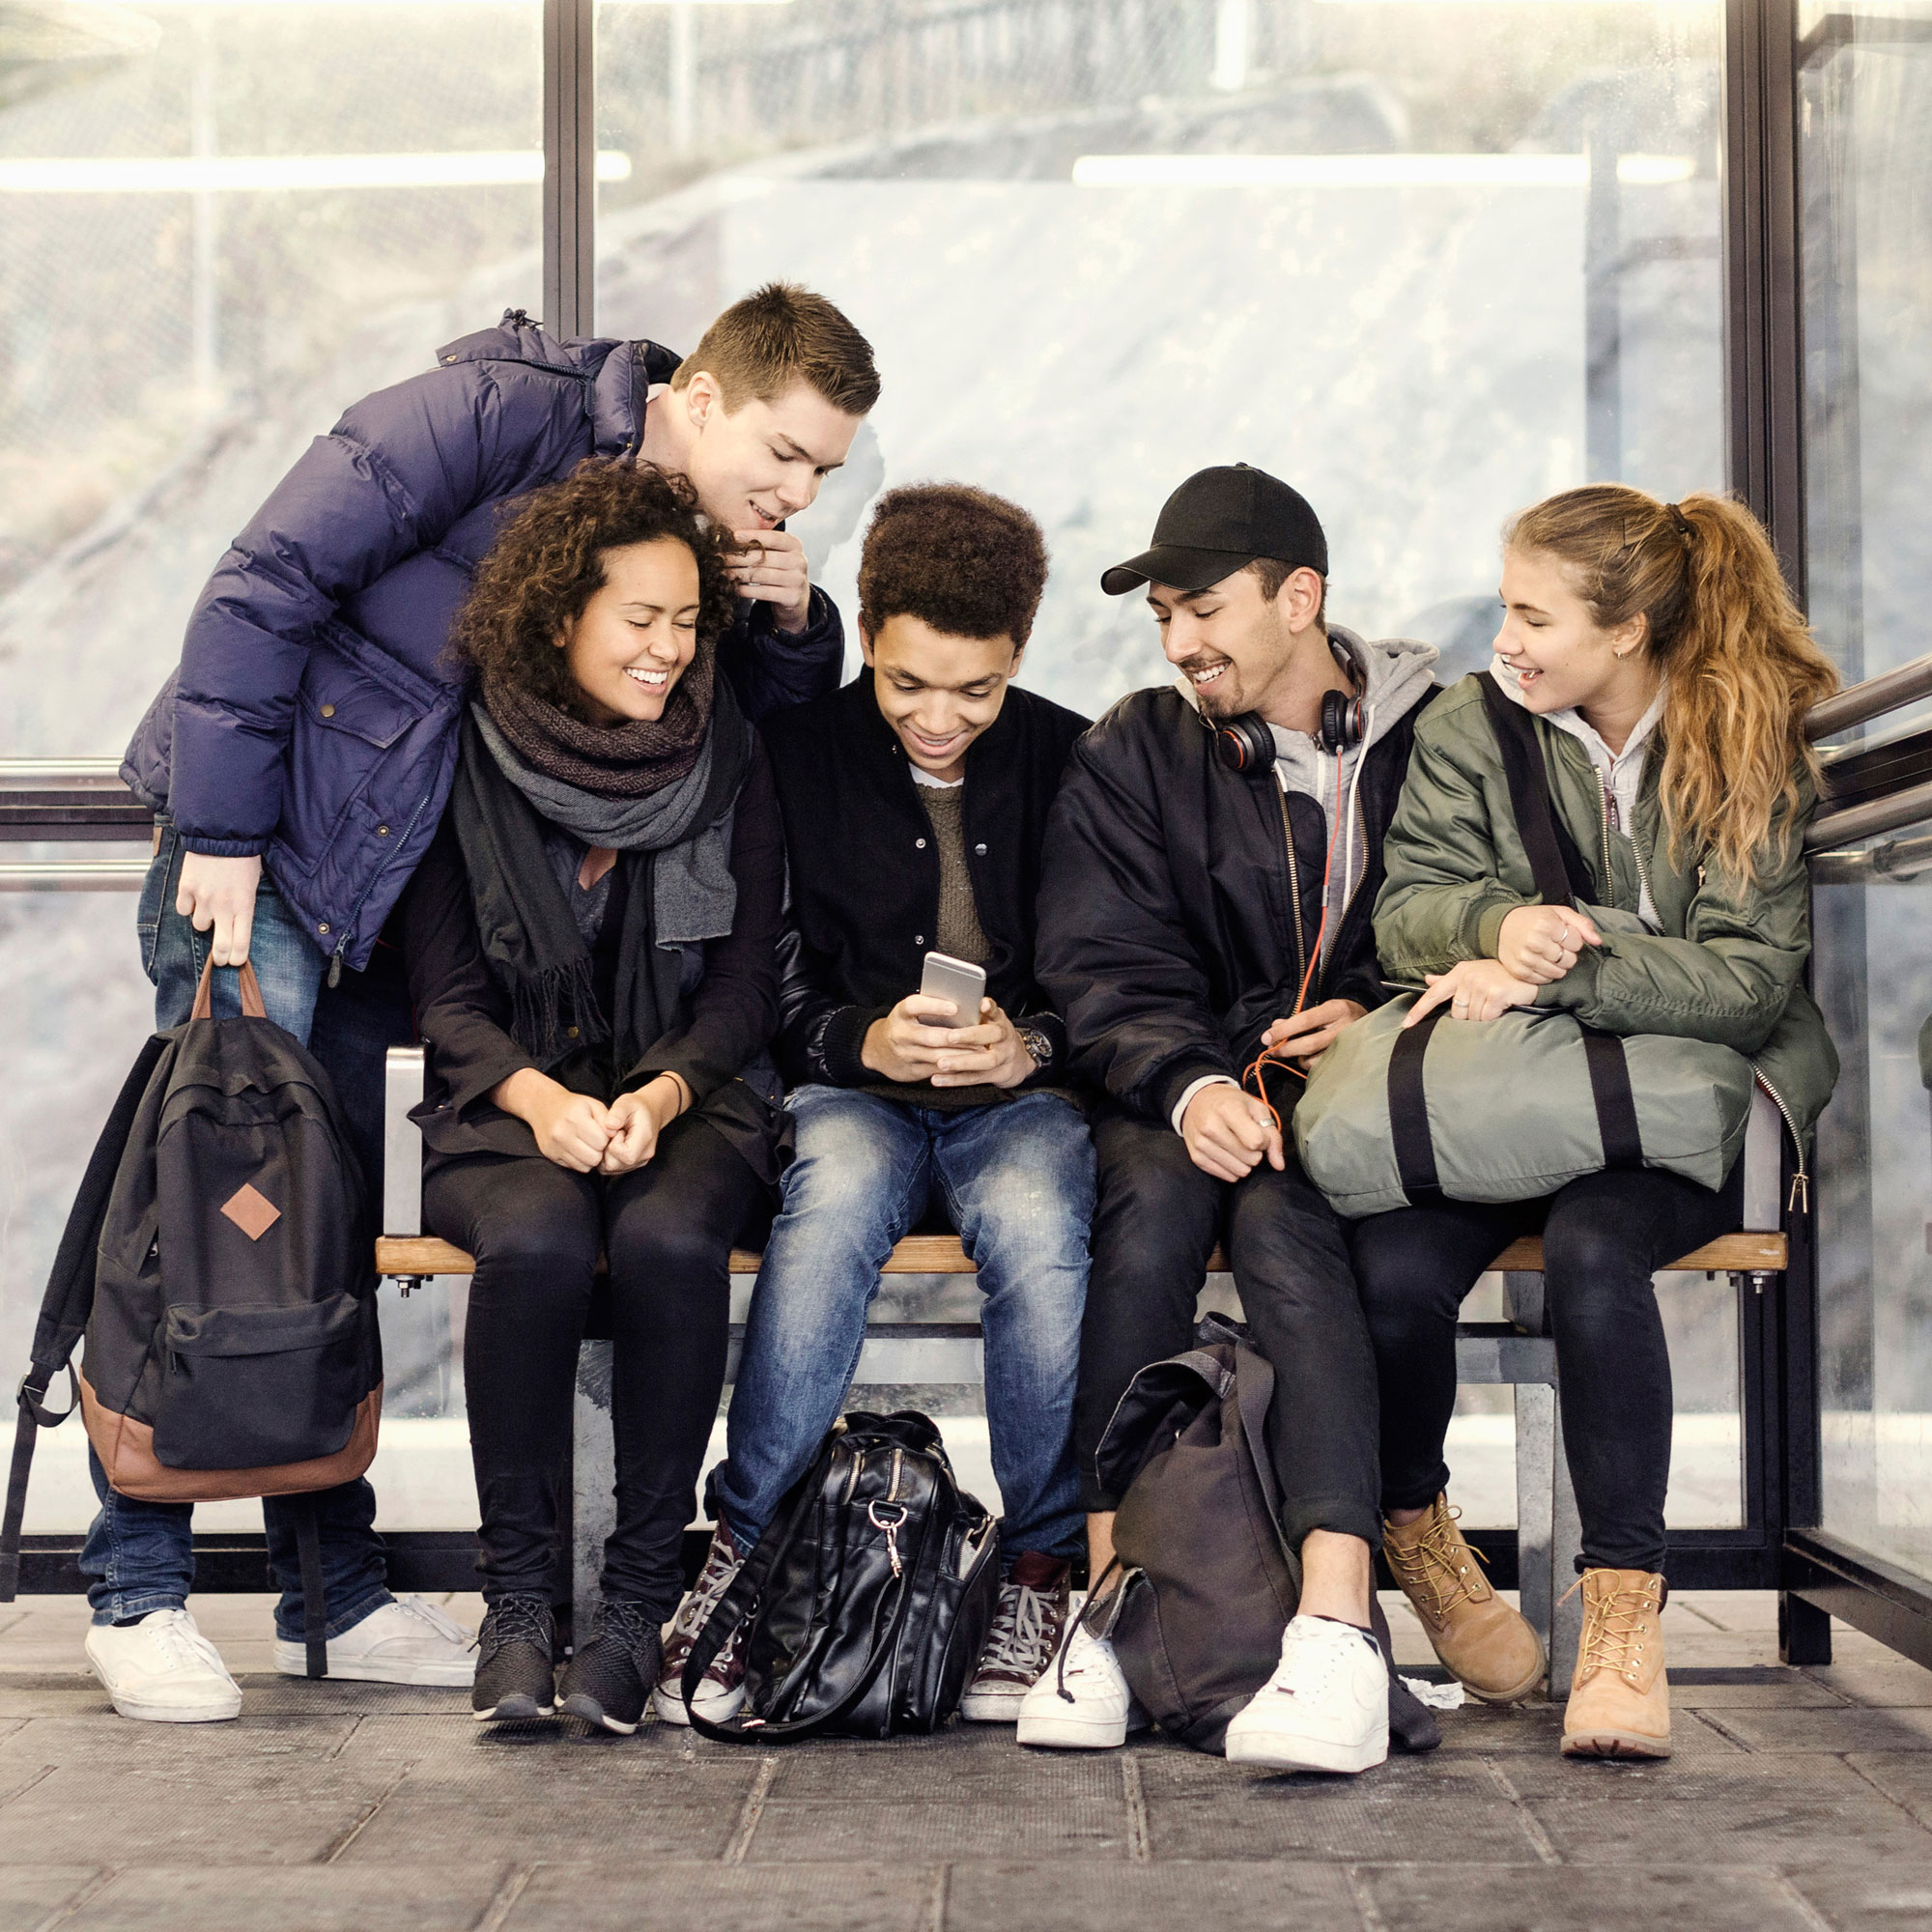 Ungdomar sitter och väntar på bussen och tittar på en mobil